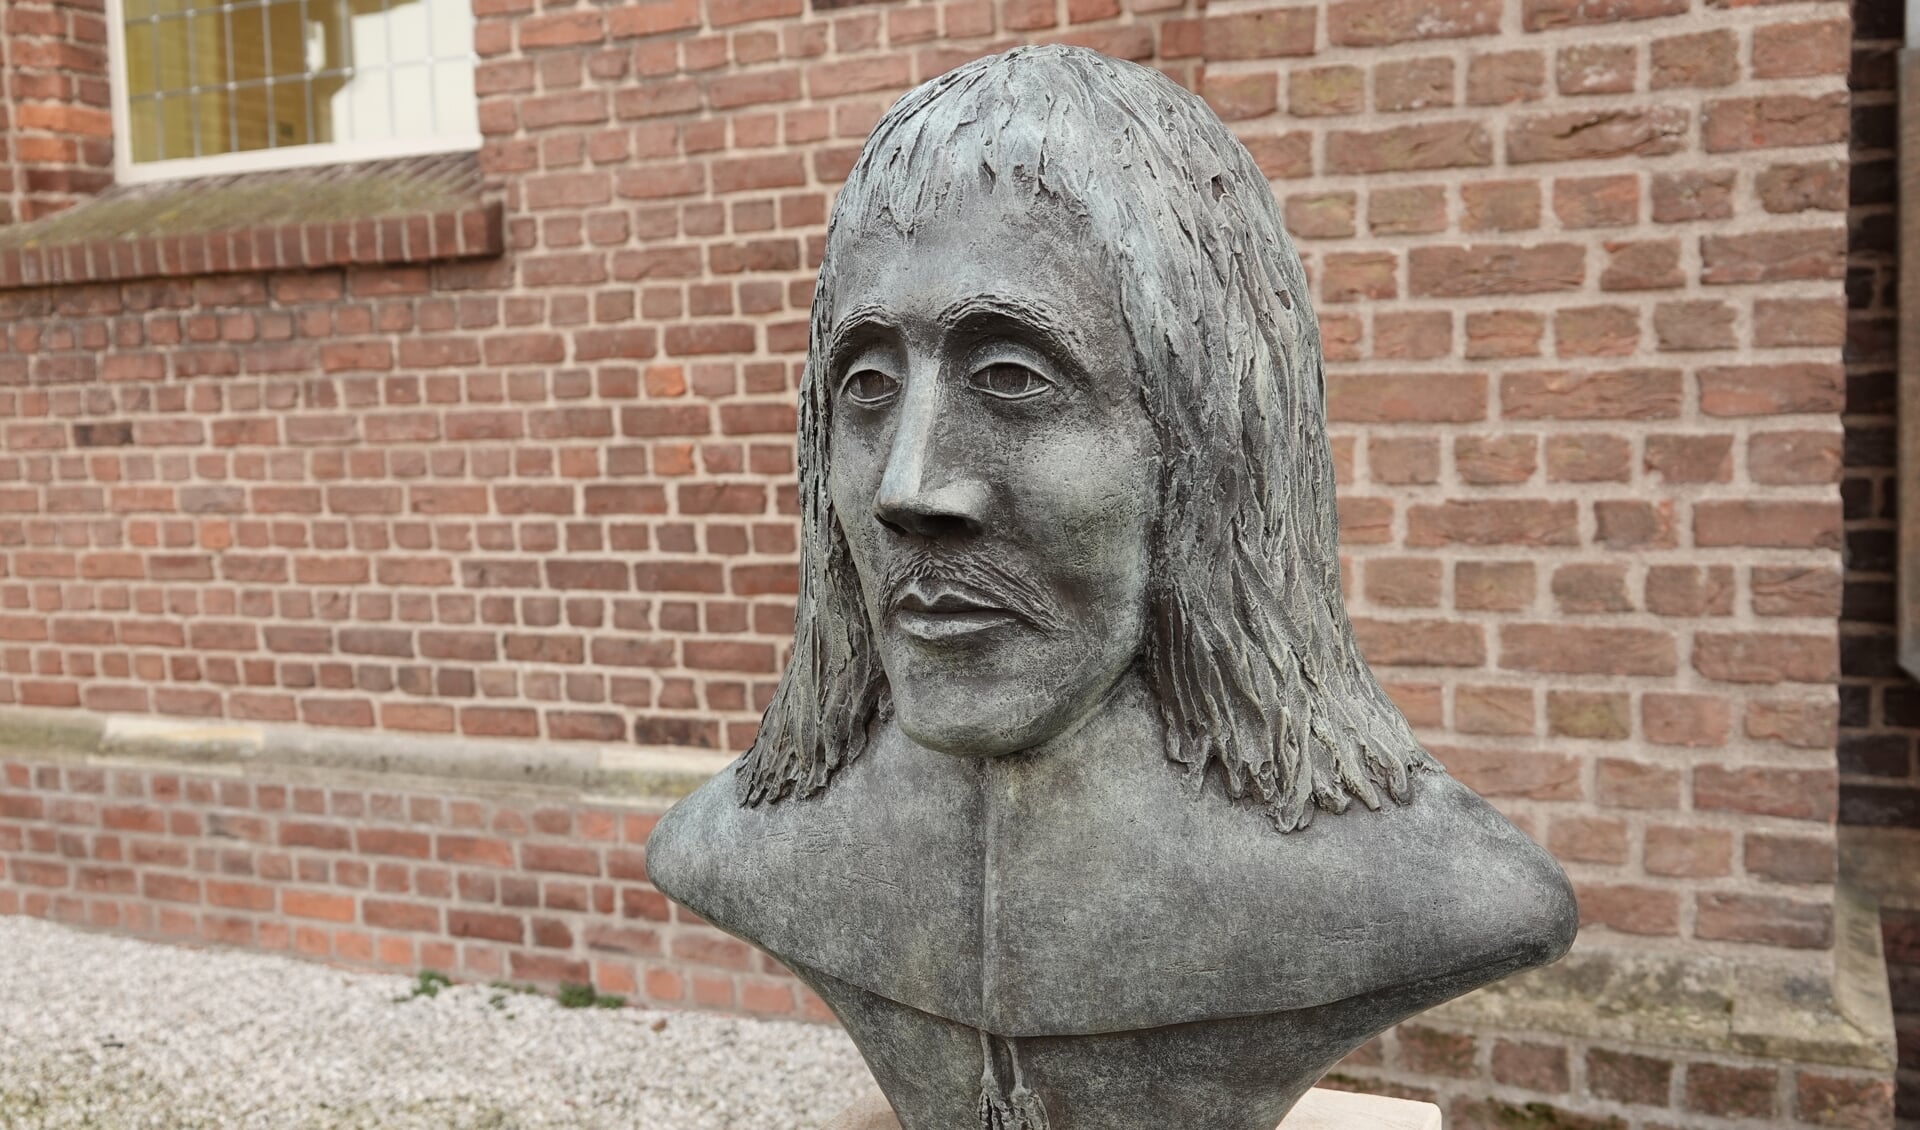 Een borstbeeld herinnert sinds kort een de geboorteplek van Willem Sluiter in Neede. Foto; Arend J. Heideman

